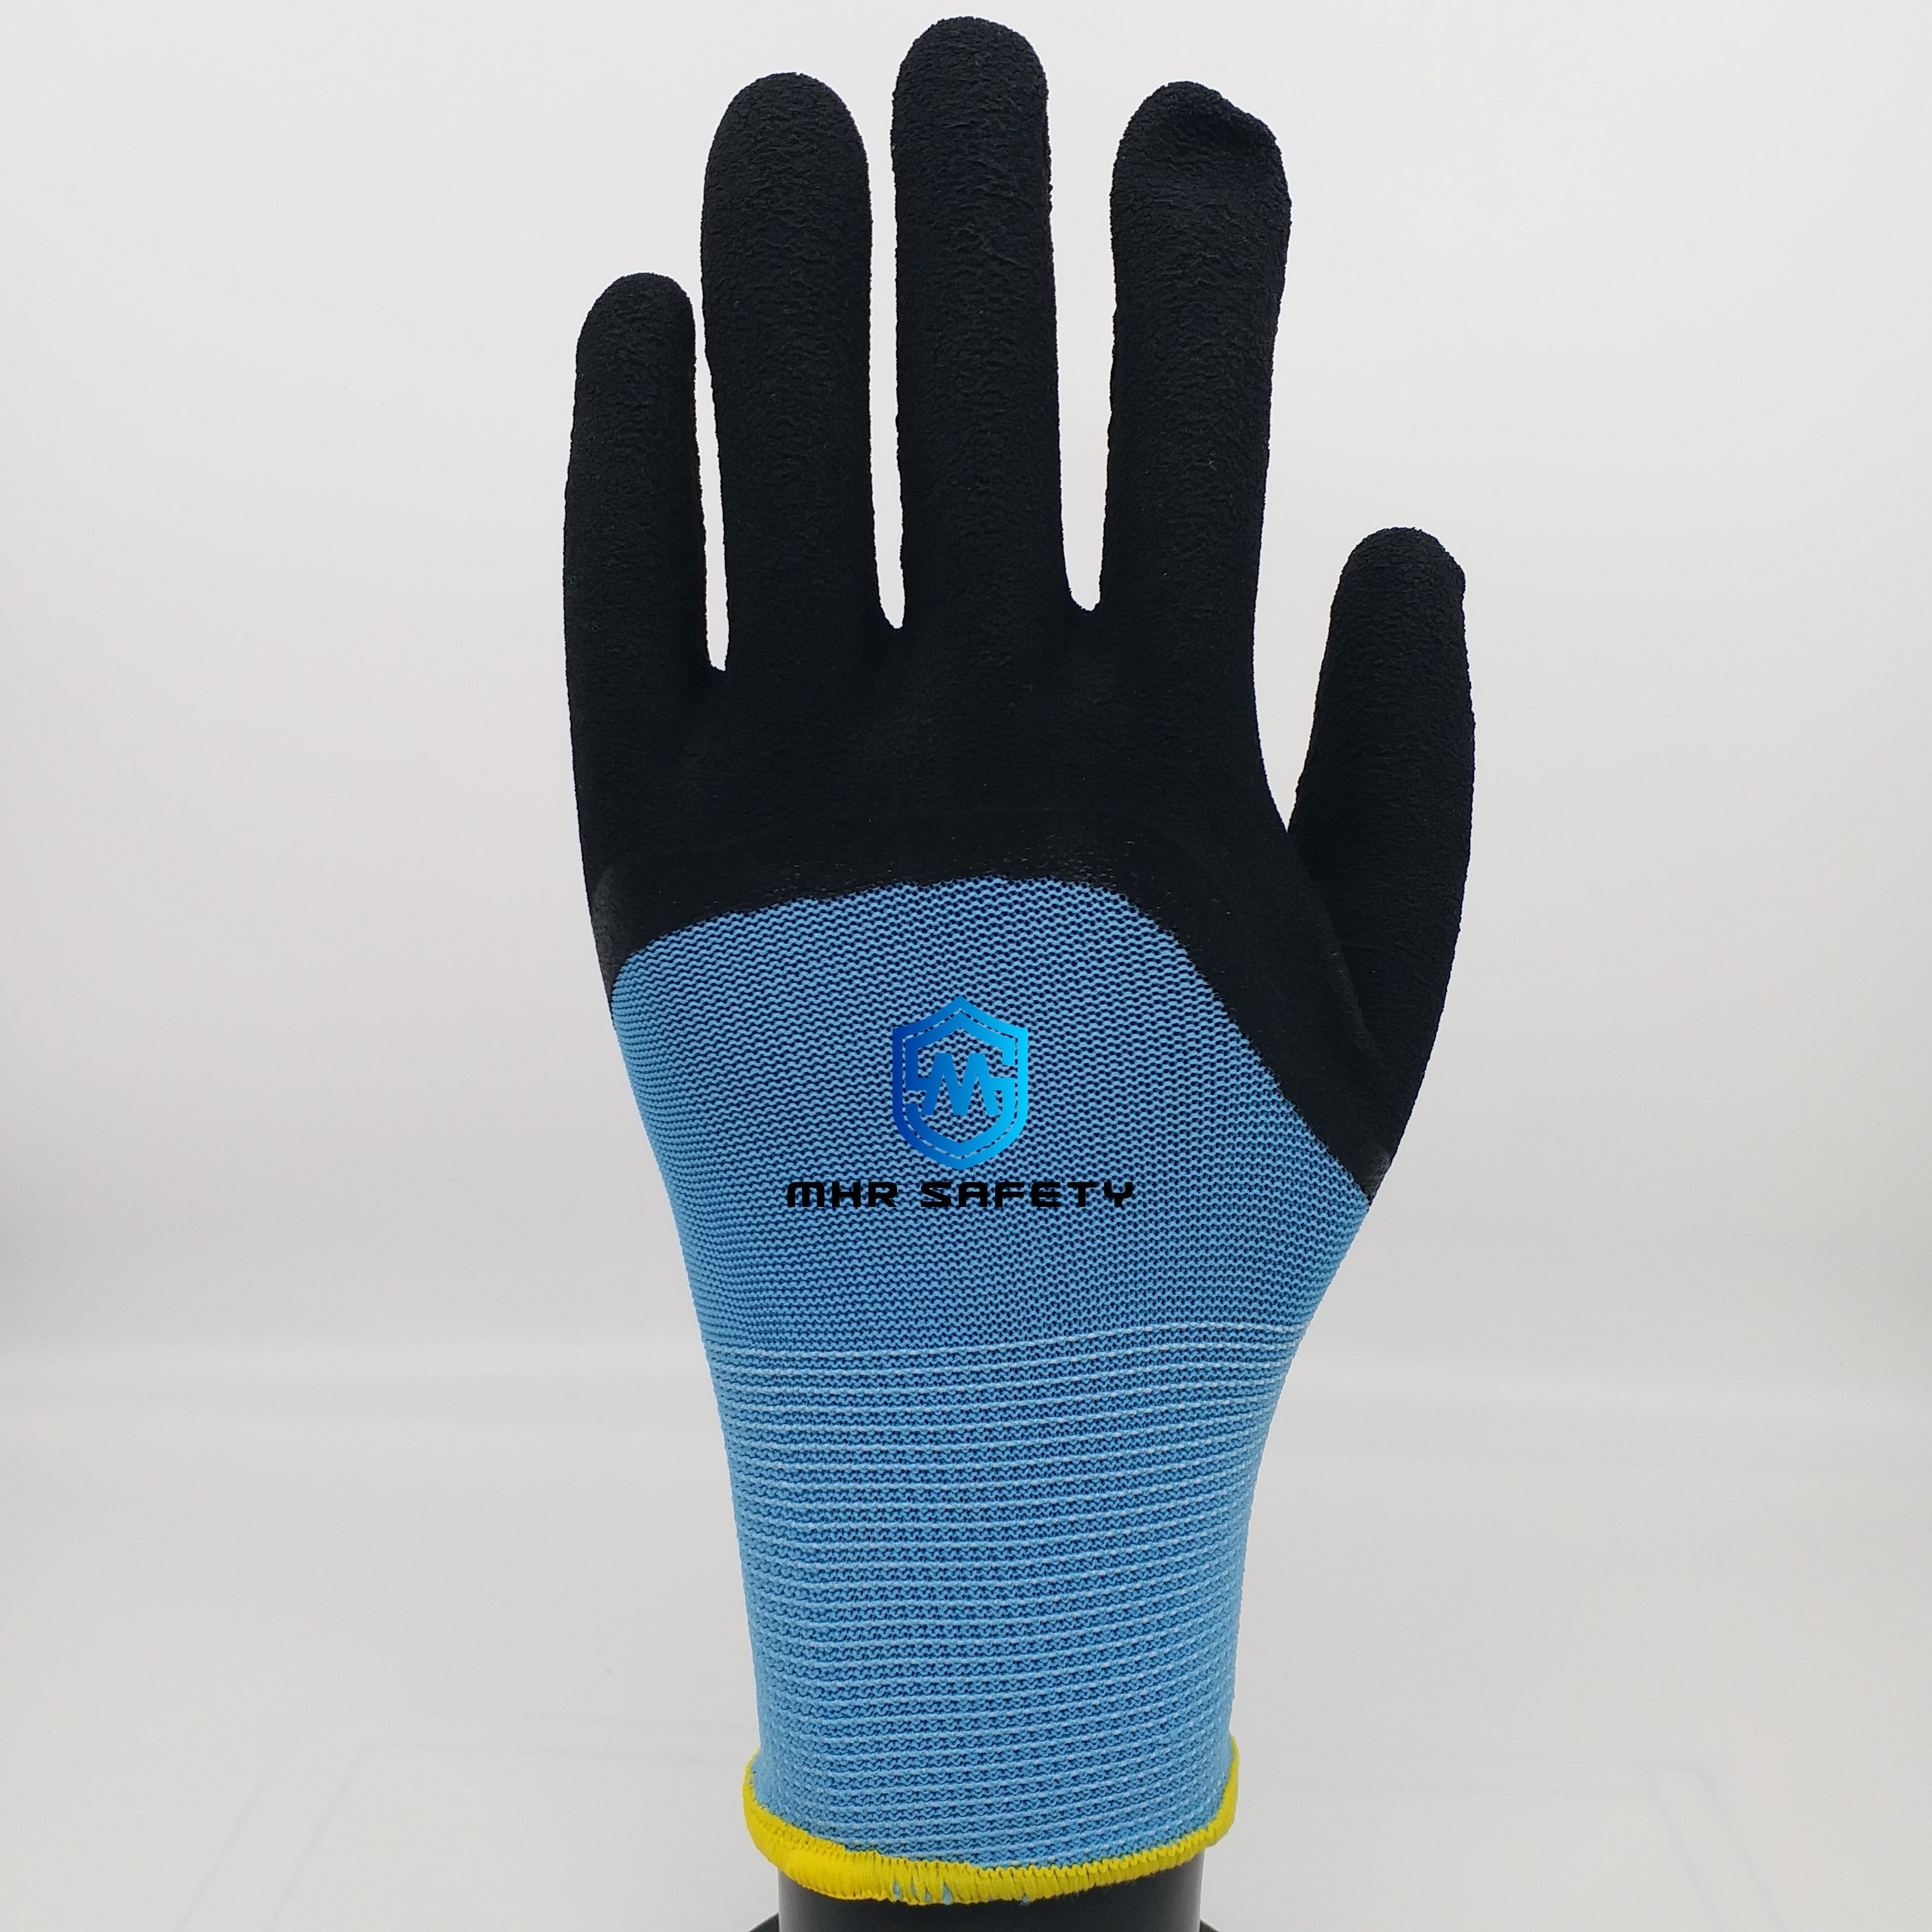 latex coated glove with foam